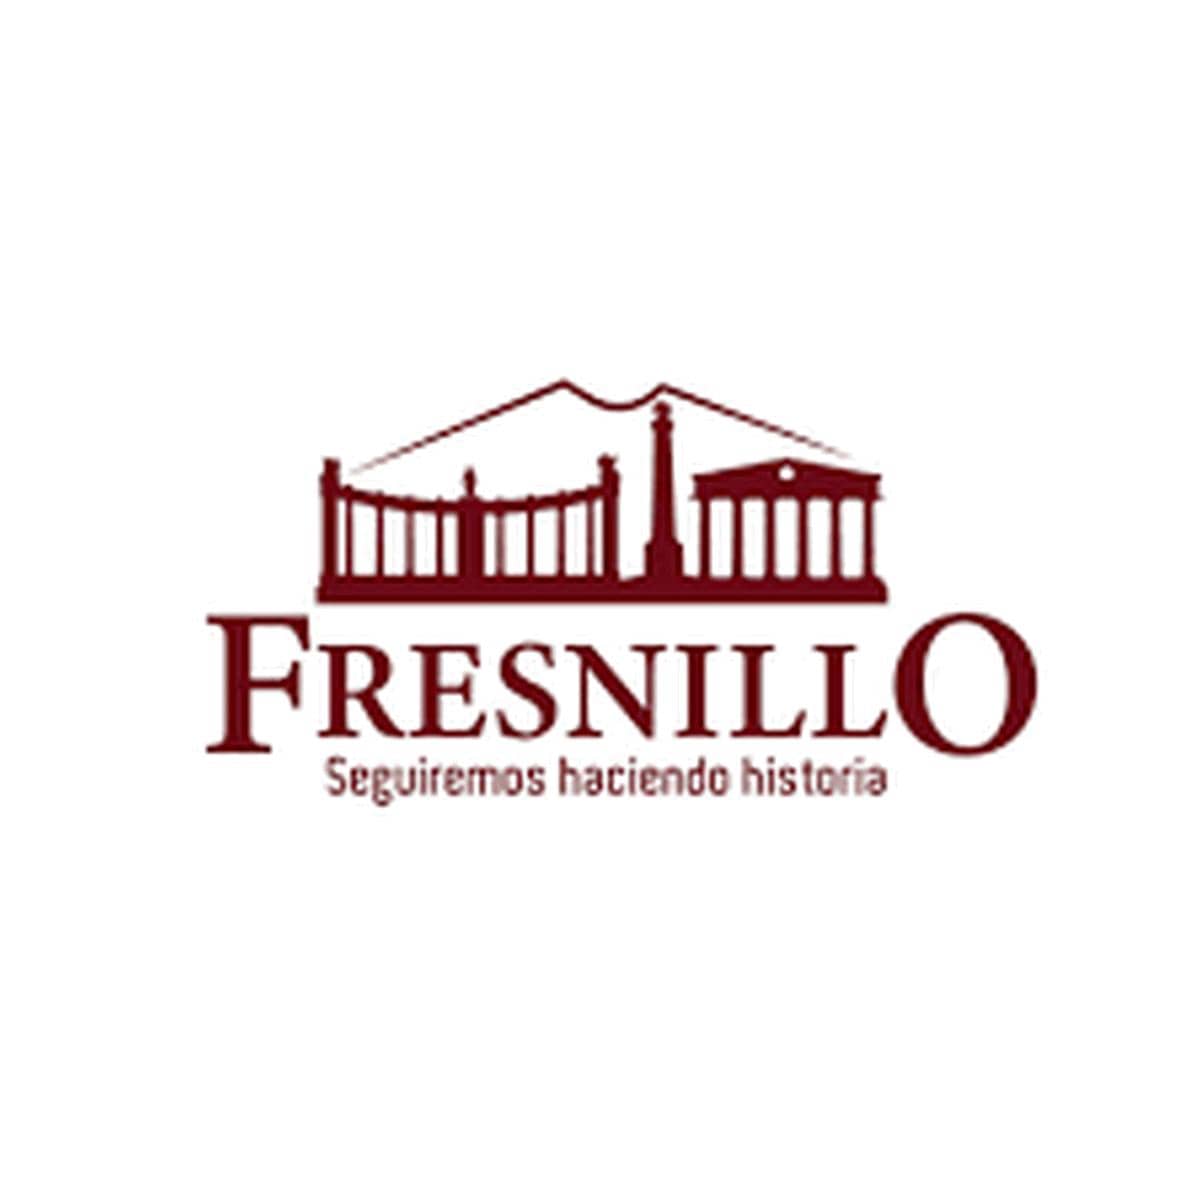 Fresnillo сократила производство золота и серебра 